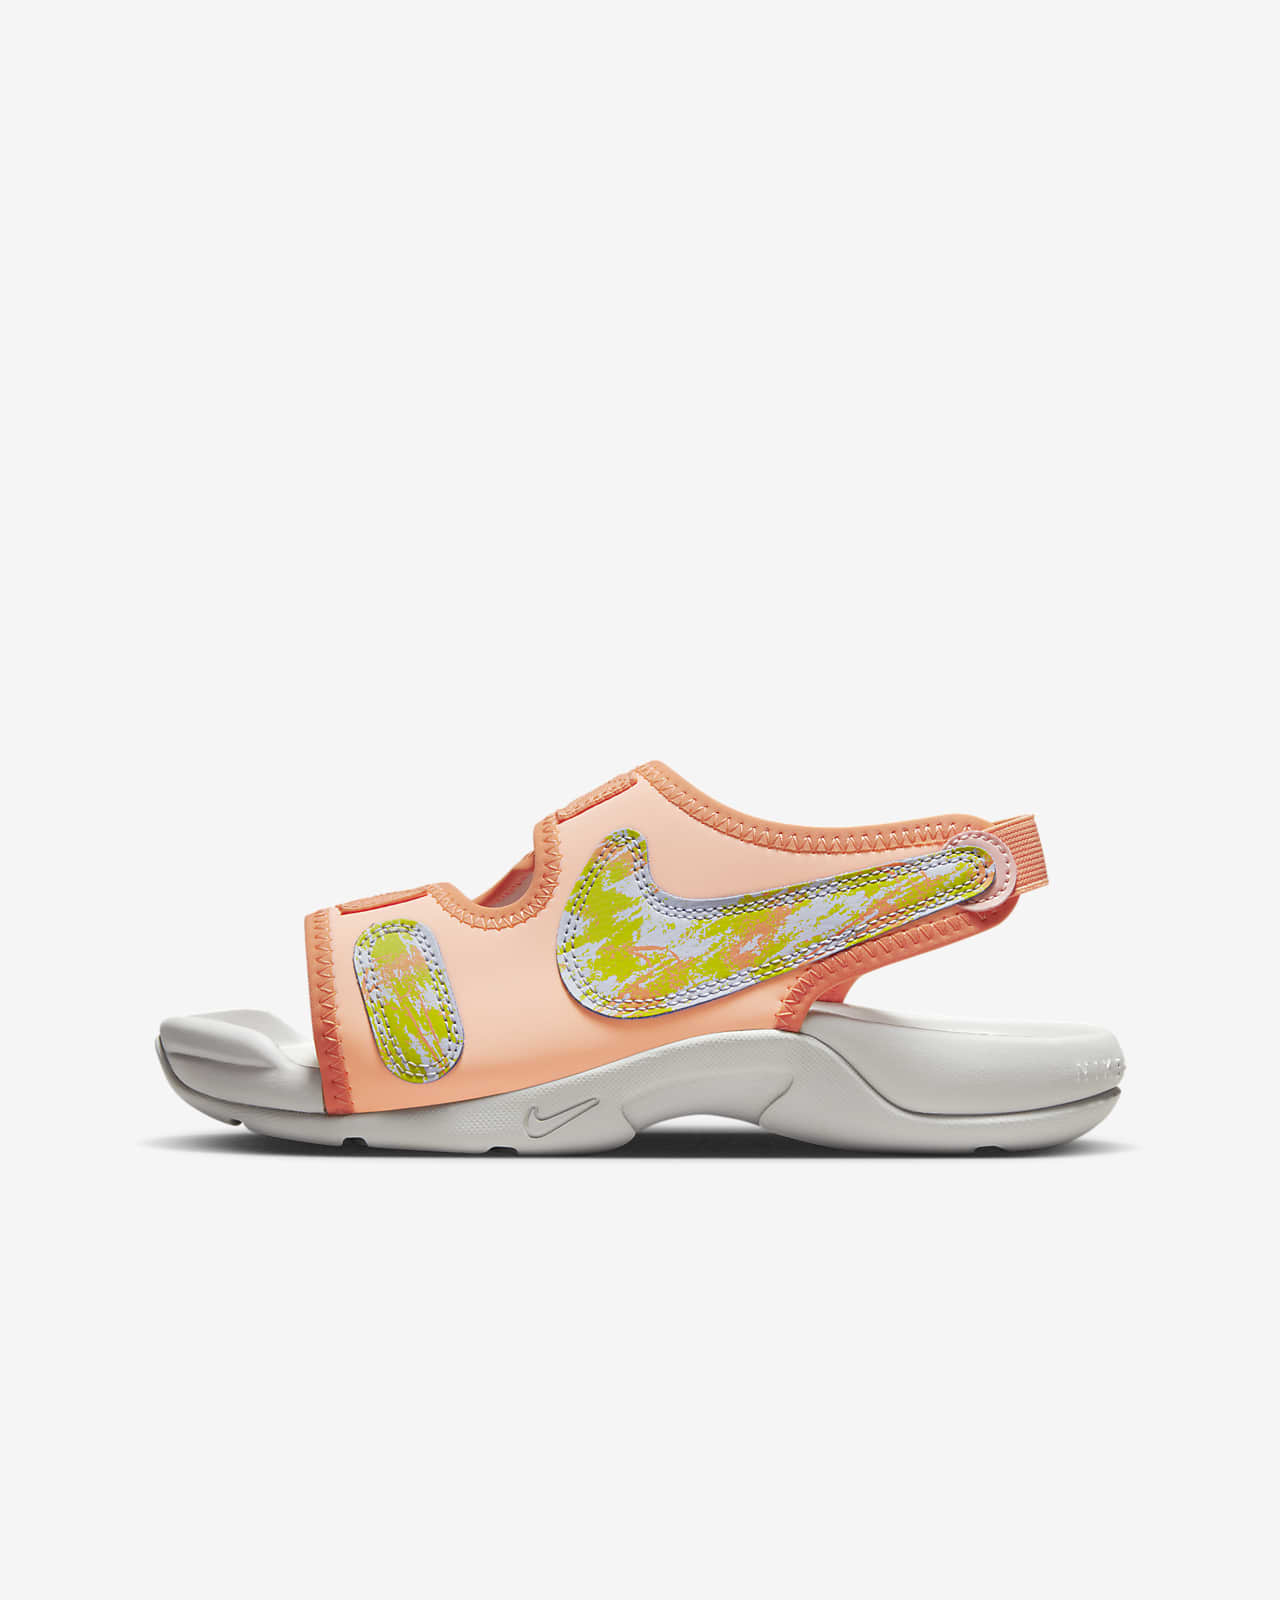 Nike Sunray Adjust 6 SE Older Kids' Slides. ID